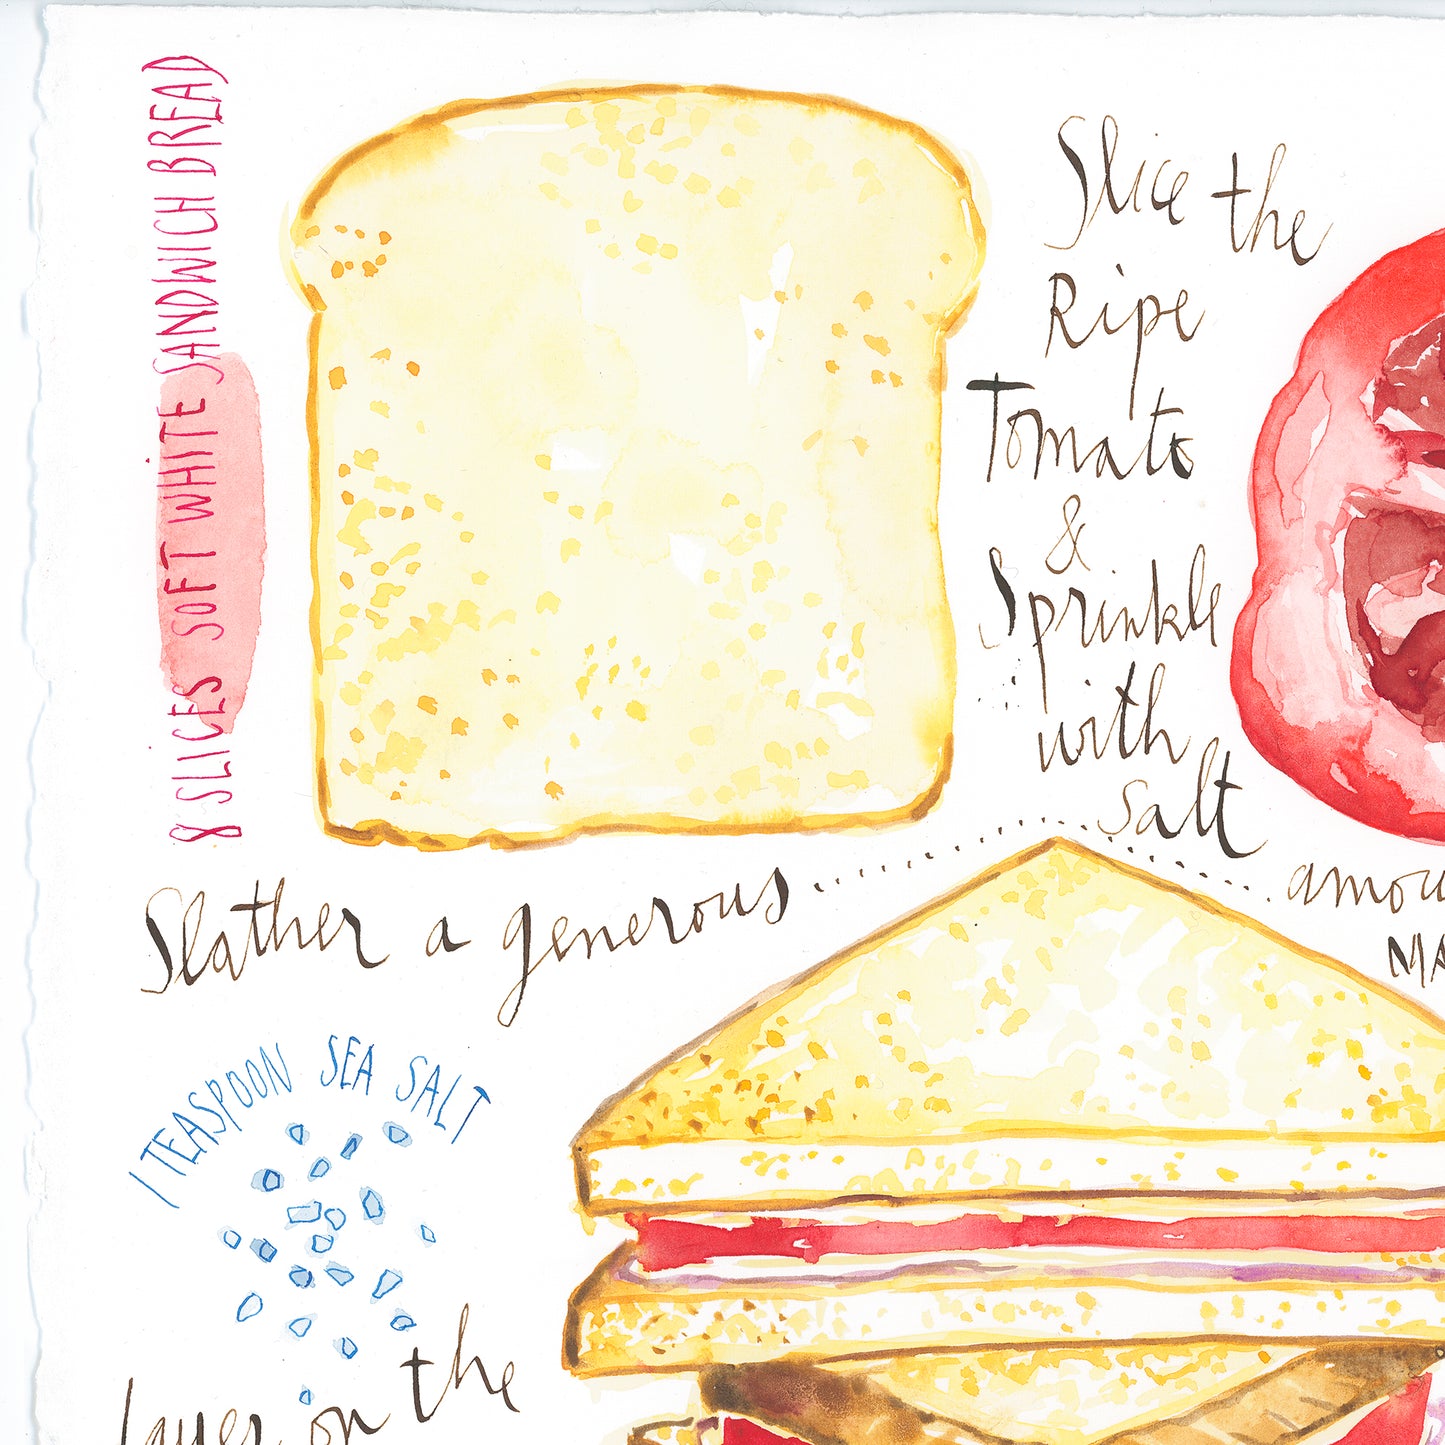 Tomato sandwich recipe. Original watercolor painting